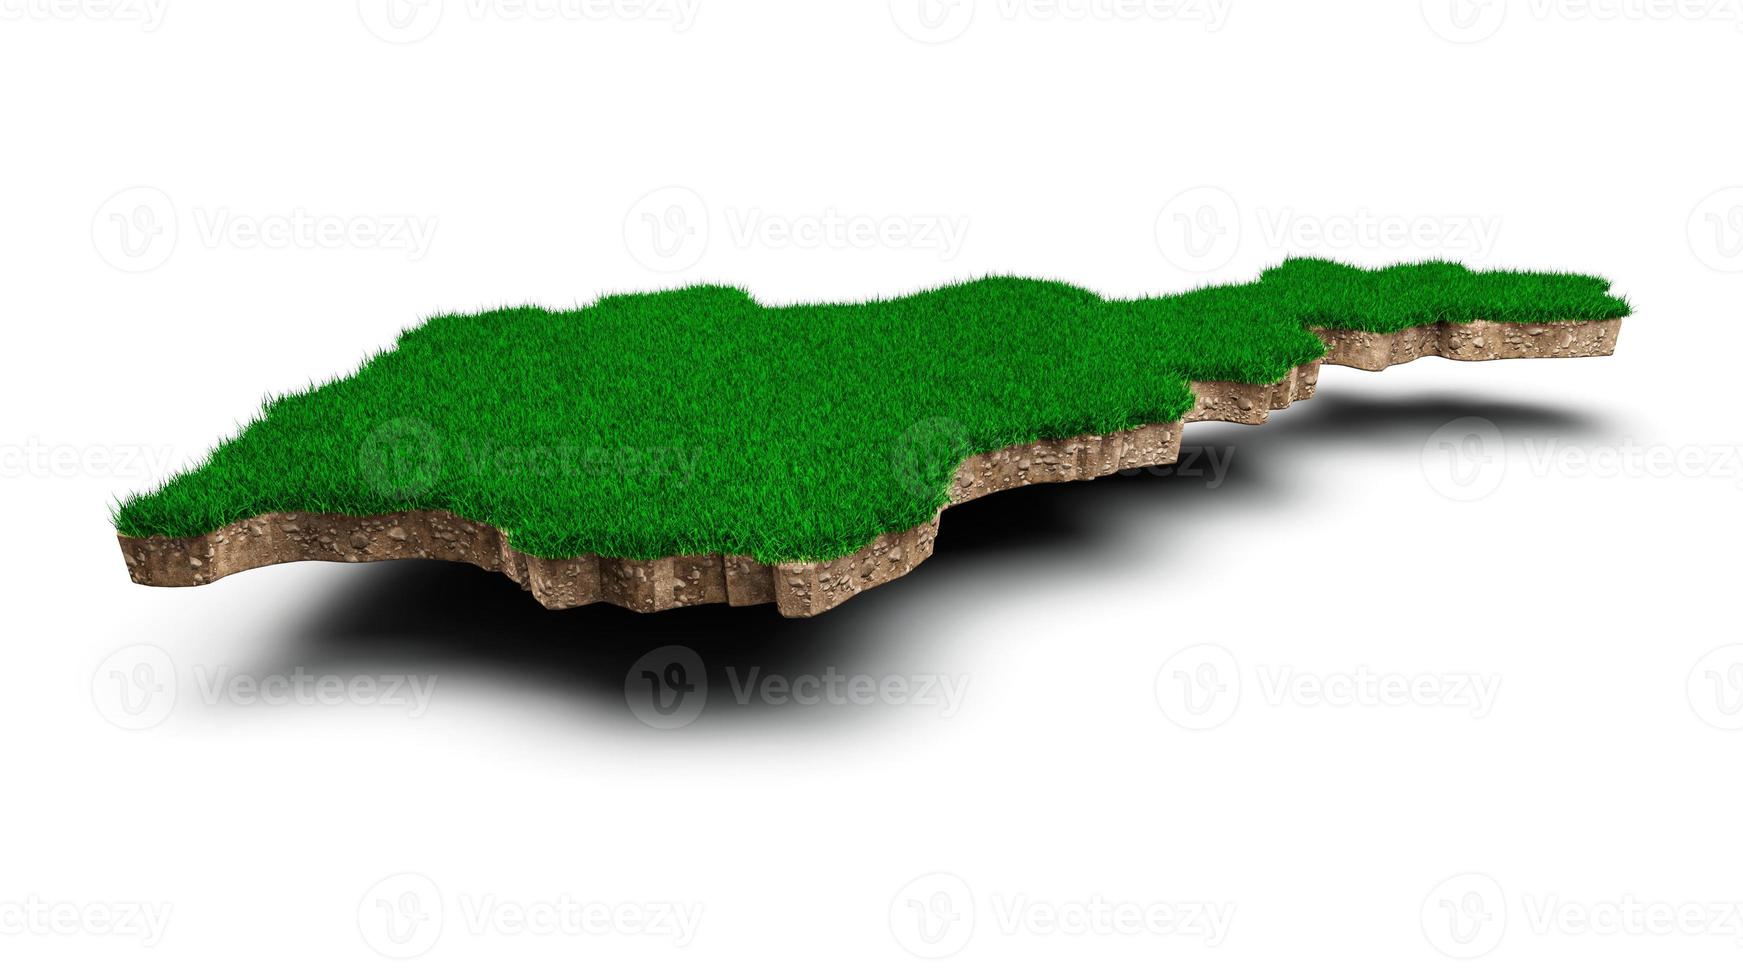 armenien karta jord mark geologi tvärsnitt med grönt gräs och sten marken textur 3d illustration foto